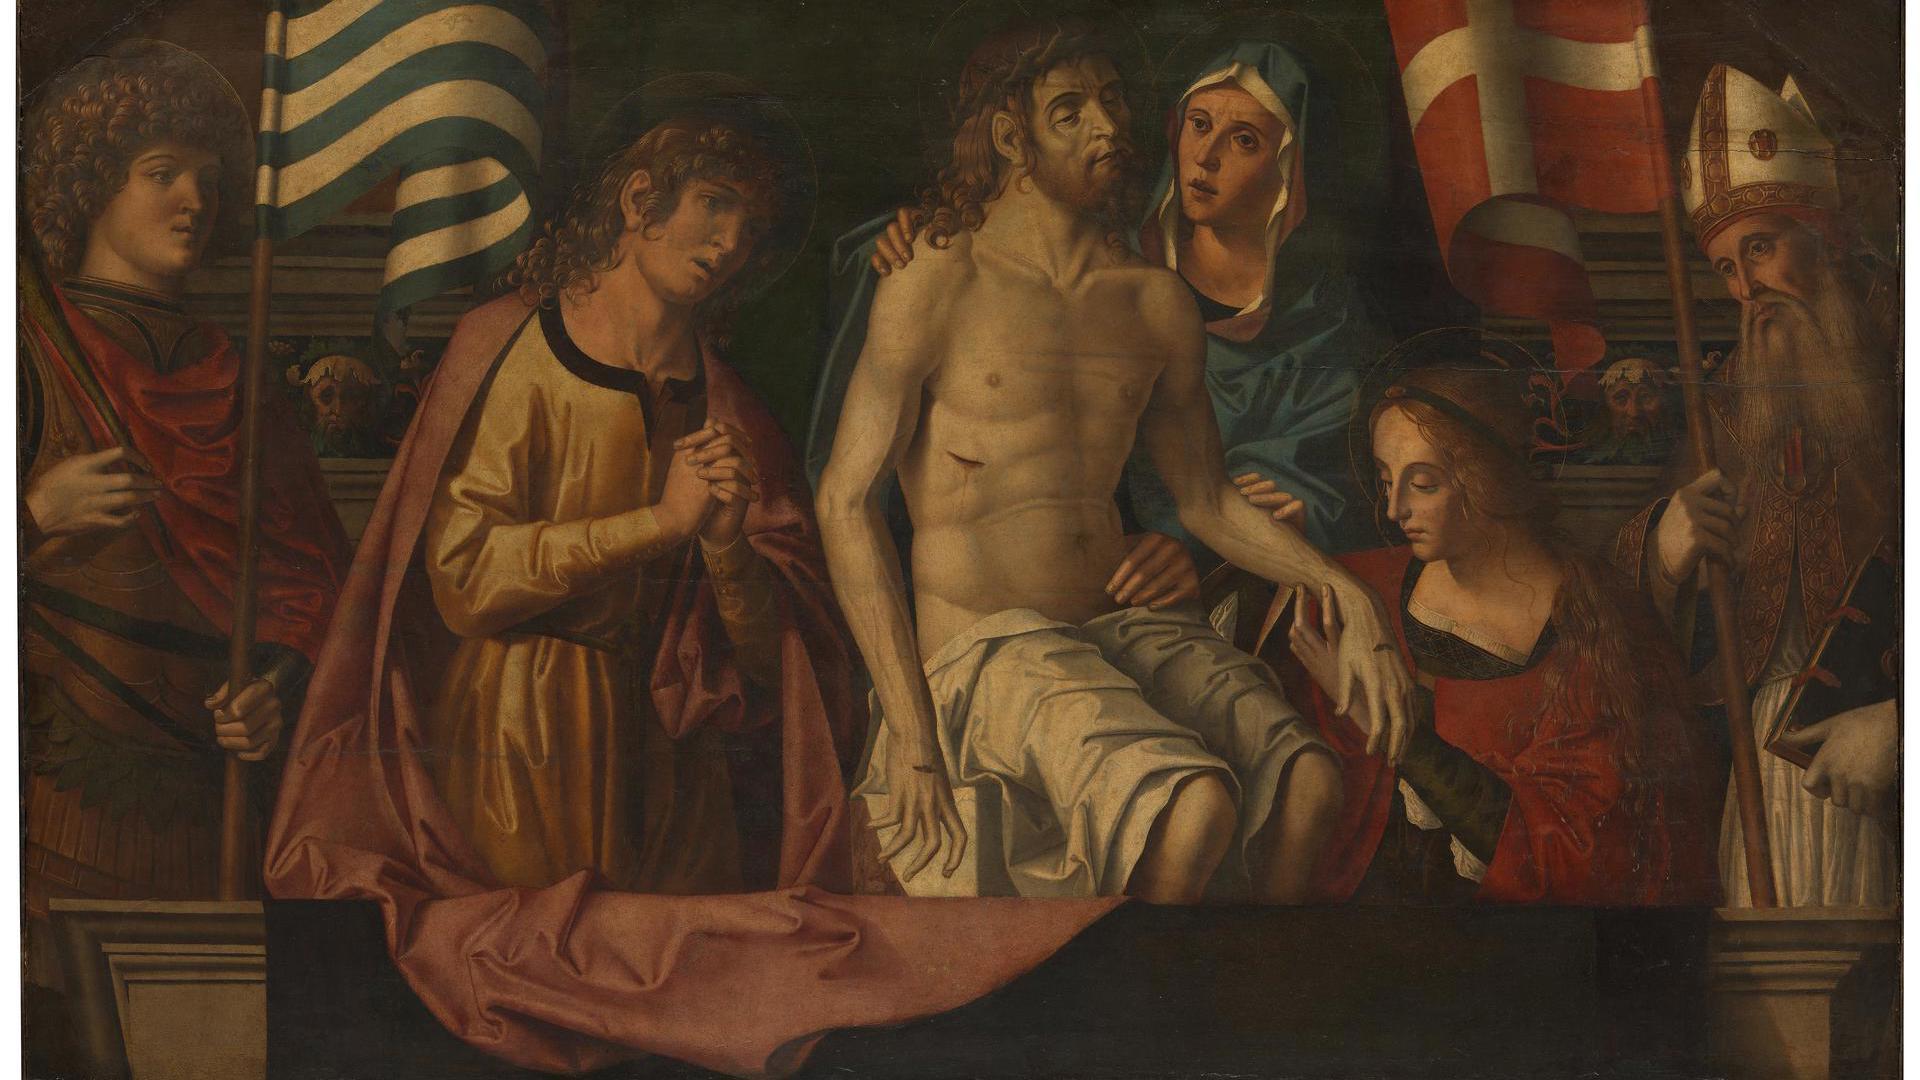 The Lamentation over the Dead Christ by Marco Palmezzano